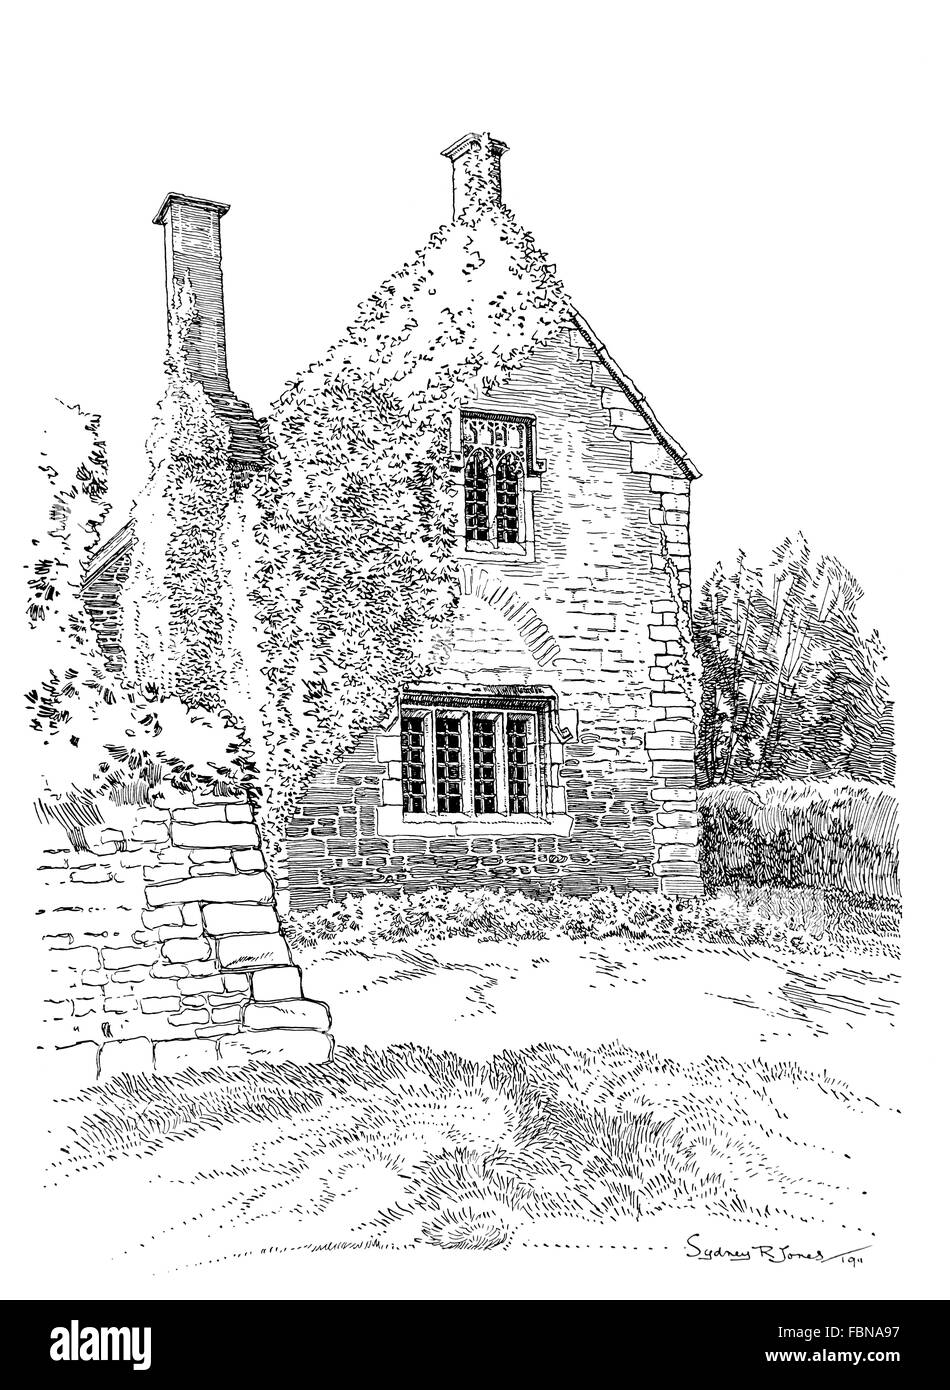 Regno Unito, Inghilterra, Dorset, Trento, vecchia casa gable contemplati nel superriduttore con pietra bifore, 1911 Illustrazione di linea Foto Stock